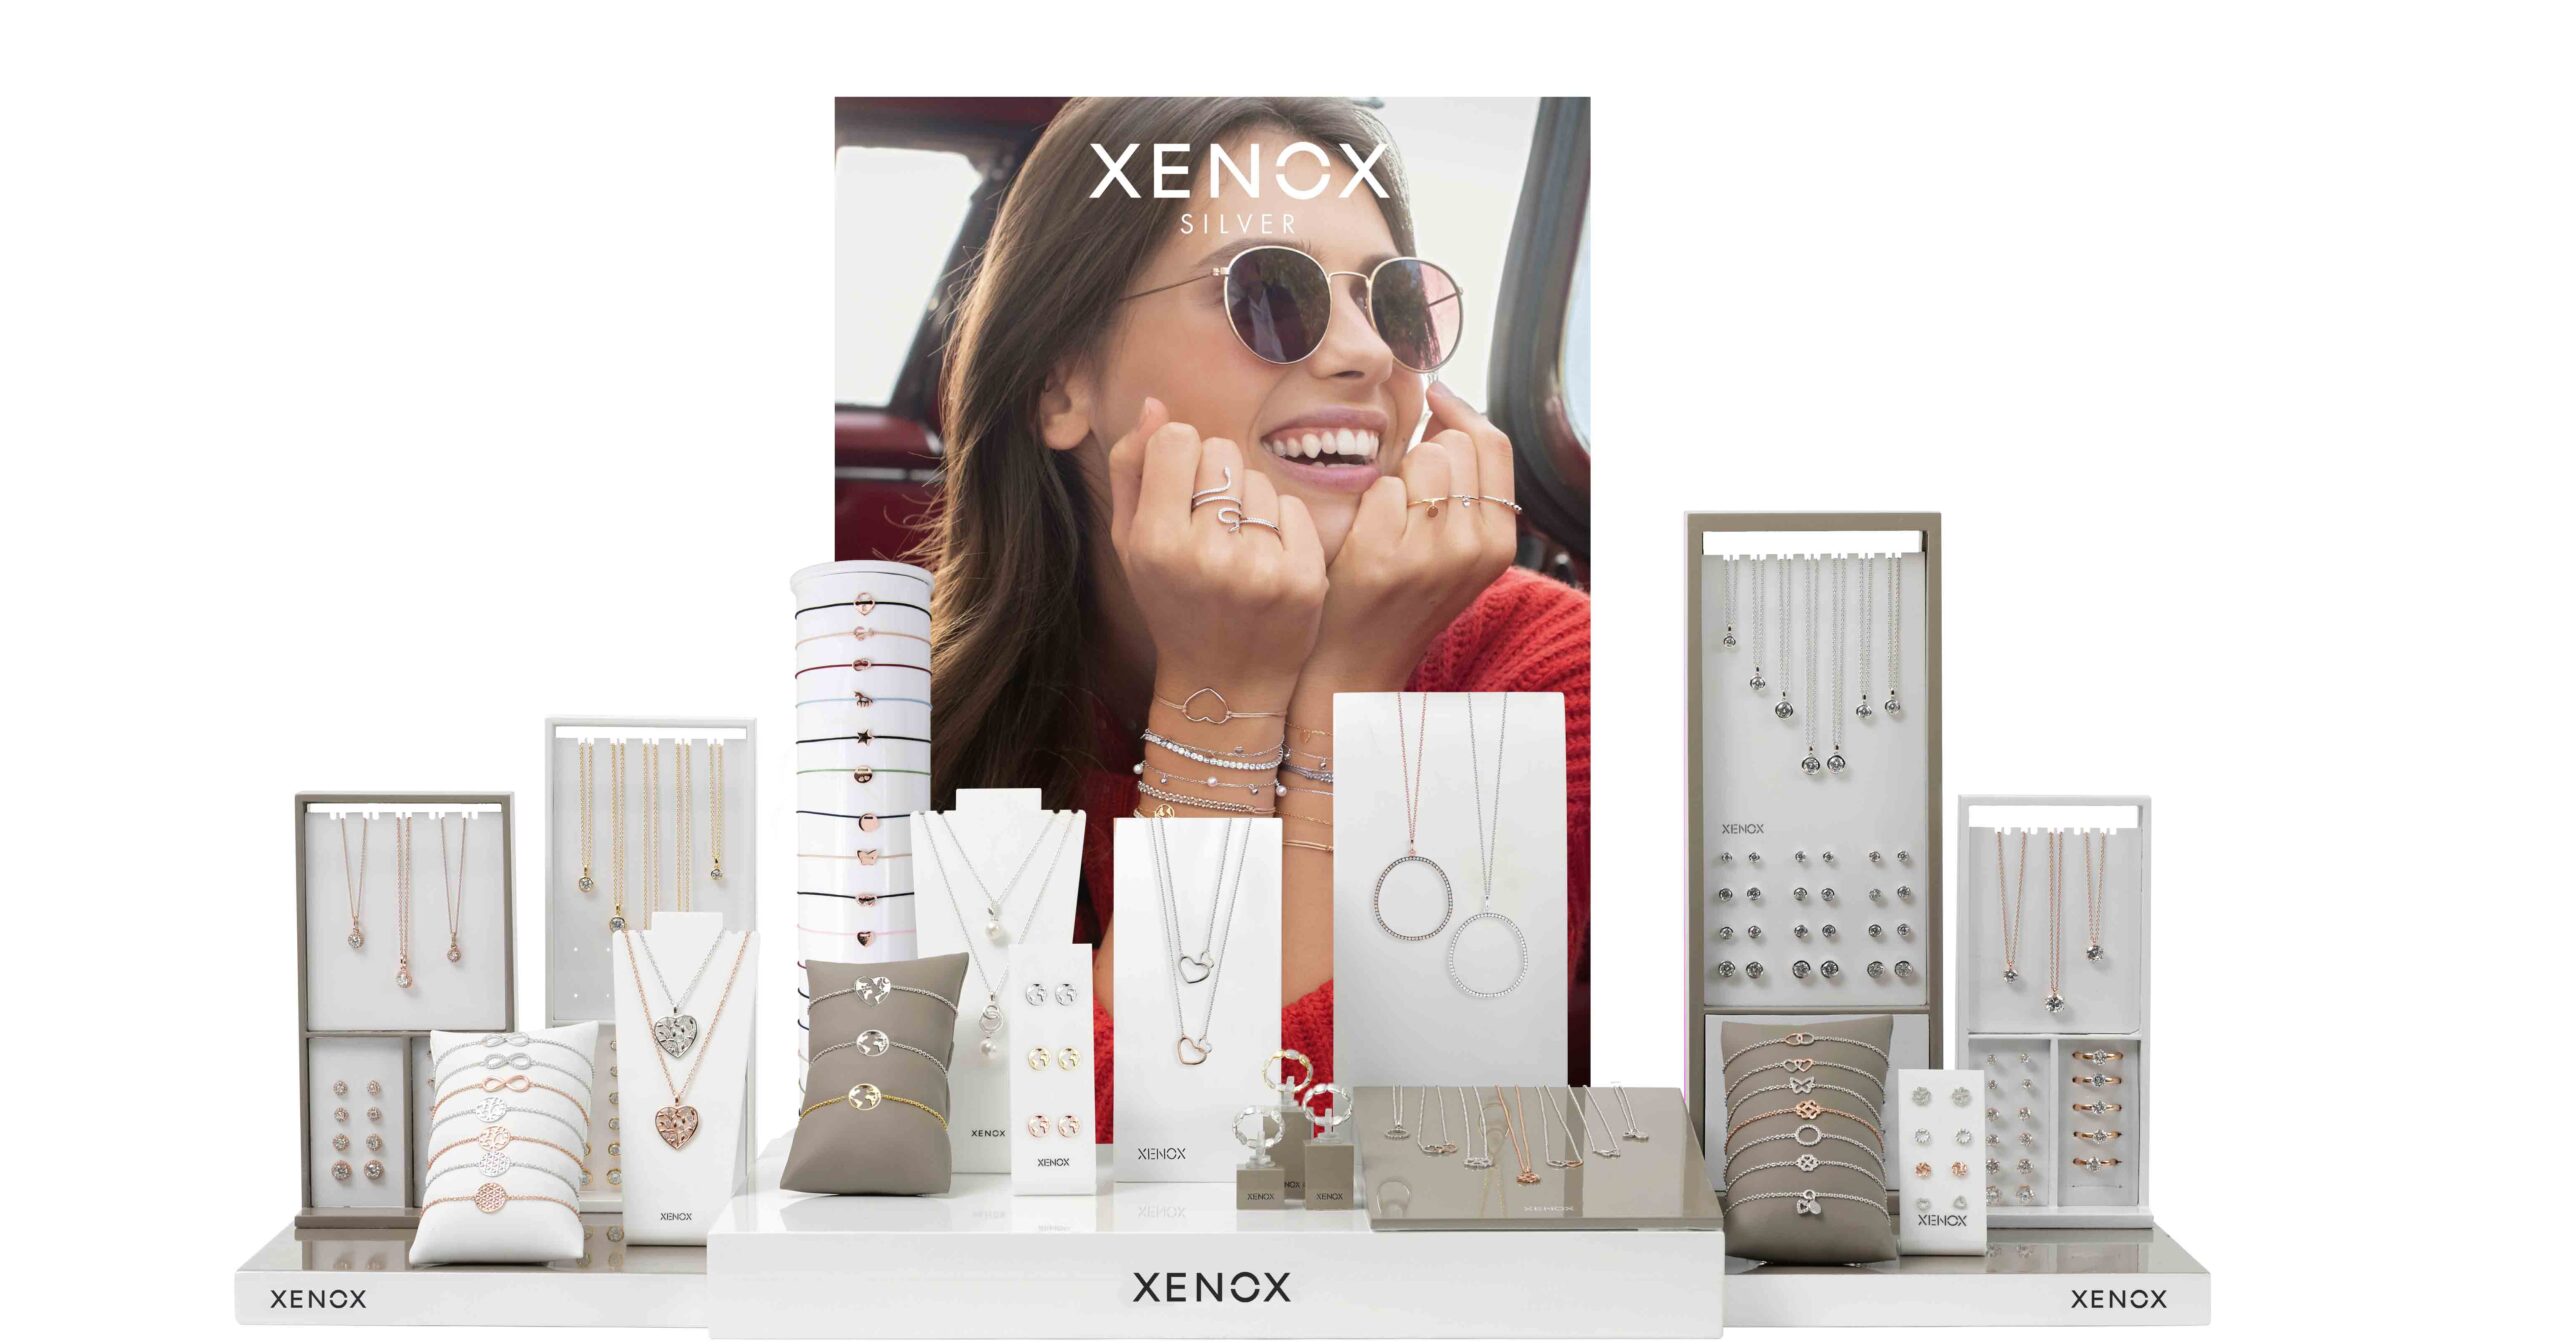 Weckt Begehrlichkeiten: Das Xenox Silver-Display inszeniert die Produkte emotional.